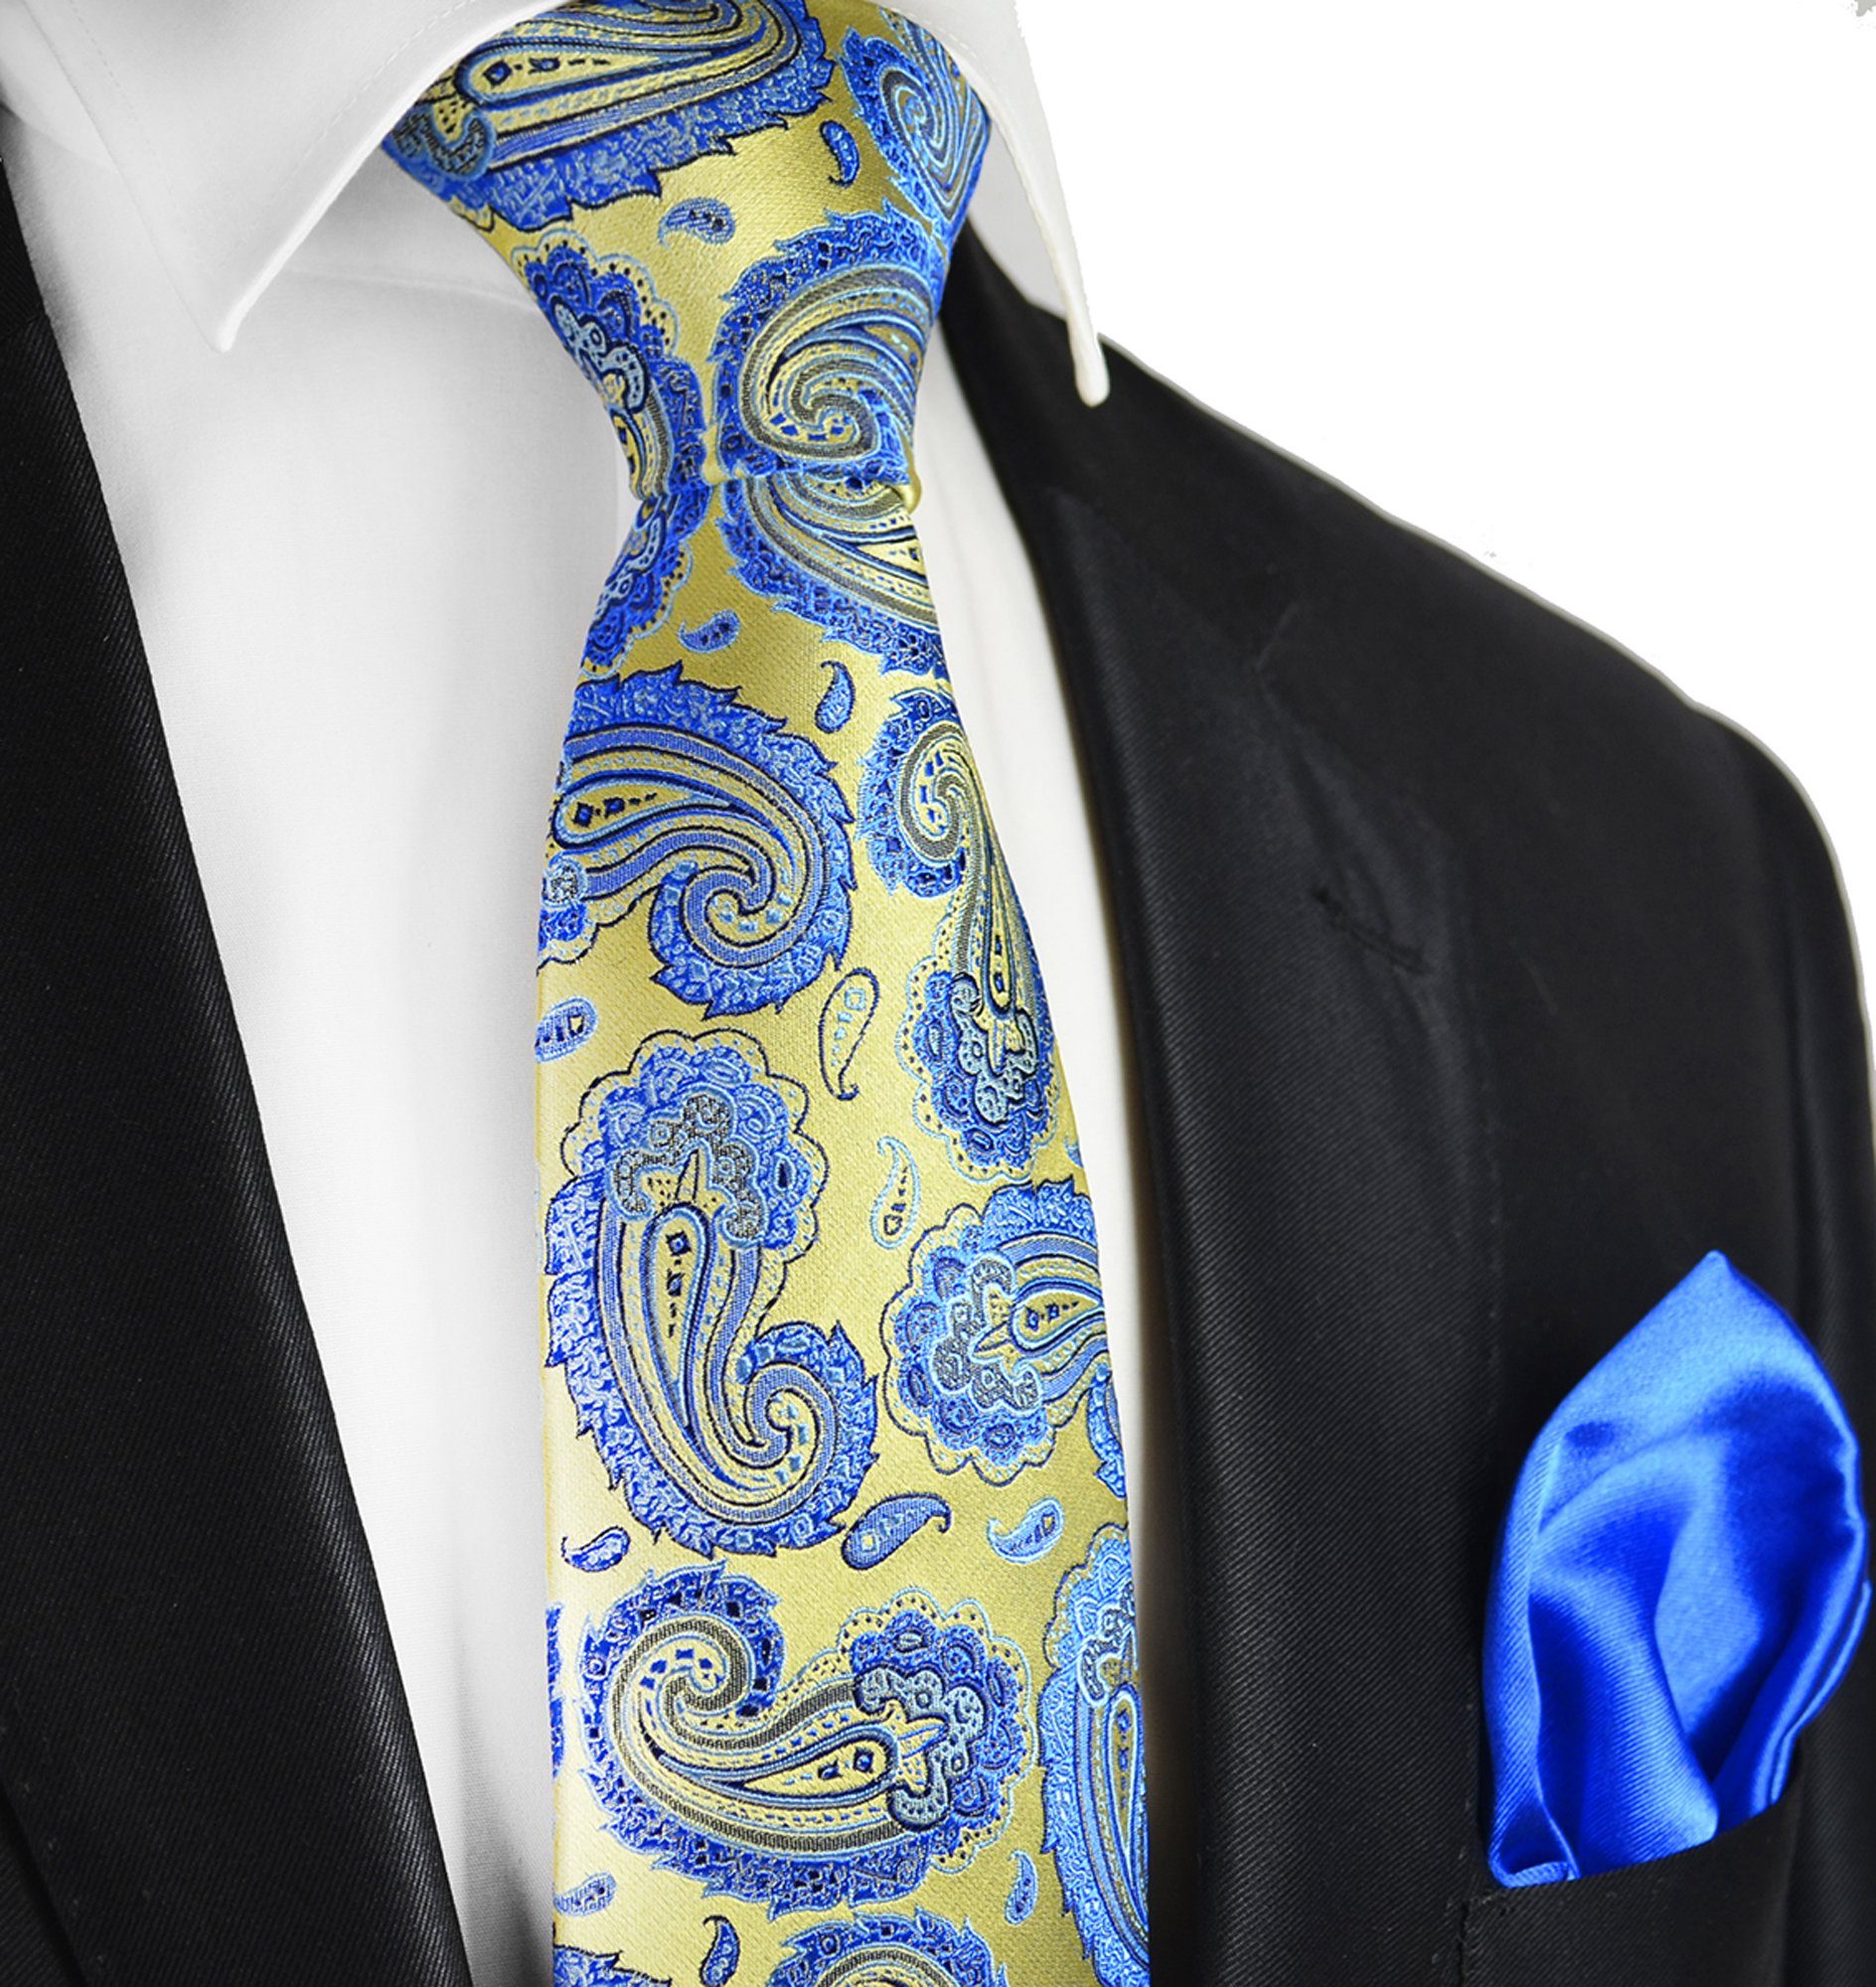 Paul Malone Krawatte 7-Fold Seidenkrawatte Schlips modern elegant 100% Seide paisley (Set, 2-St., mit Einstecktuch) gold blau S13977-9